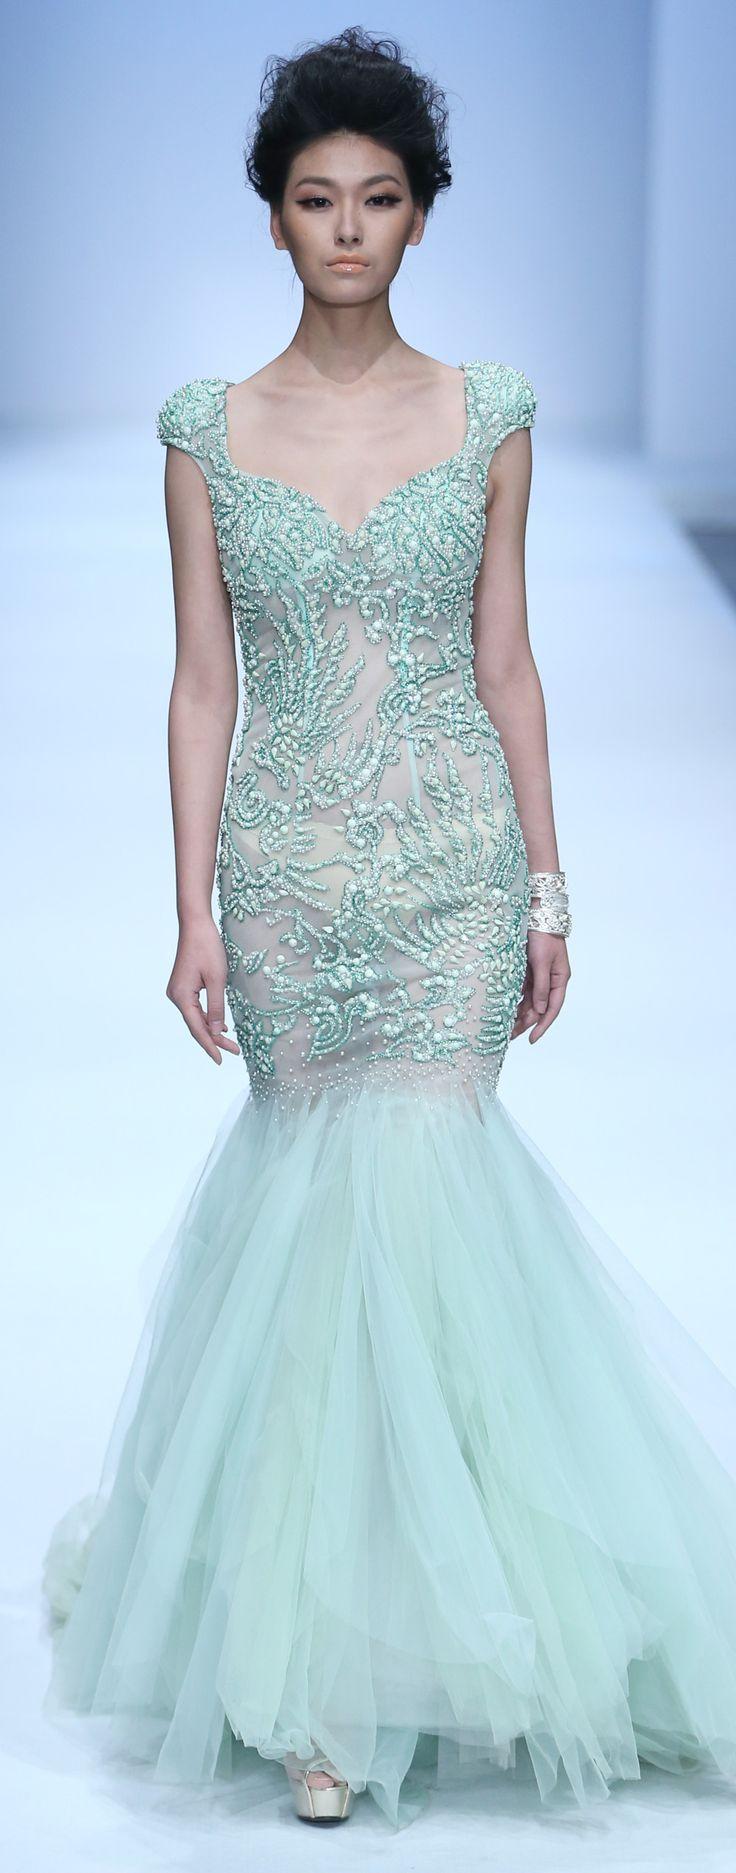 زفاف - ZHANG JINGJING S/S 2014 Haute Couture